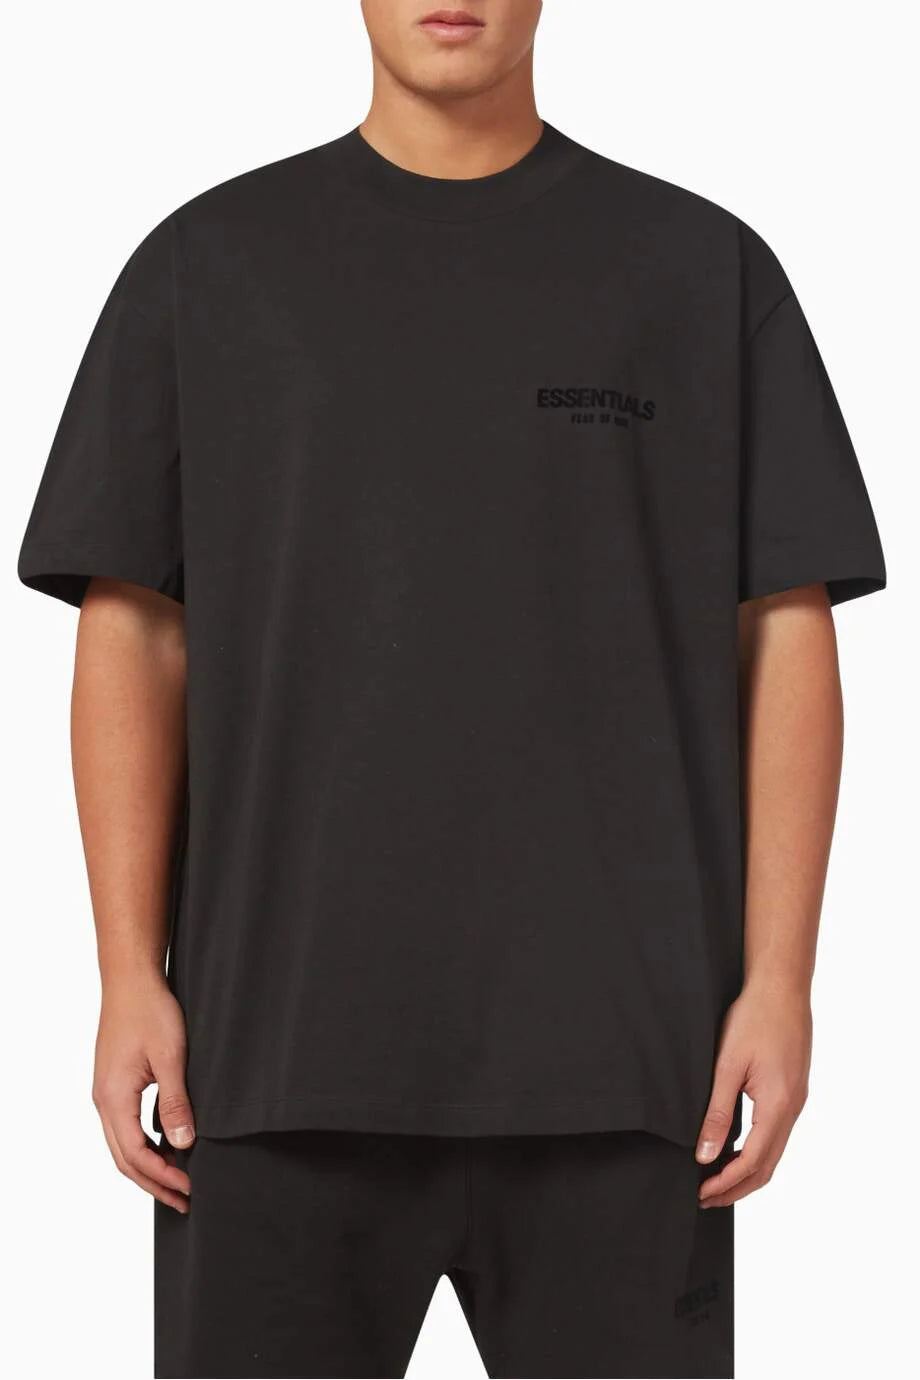 Fear of God Essentials T-Shirt SSTEE (Stretch Lim)